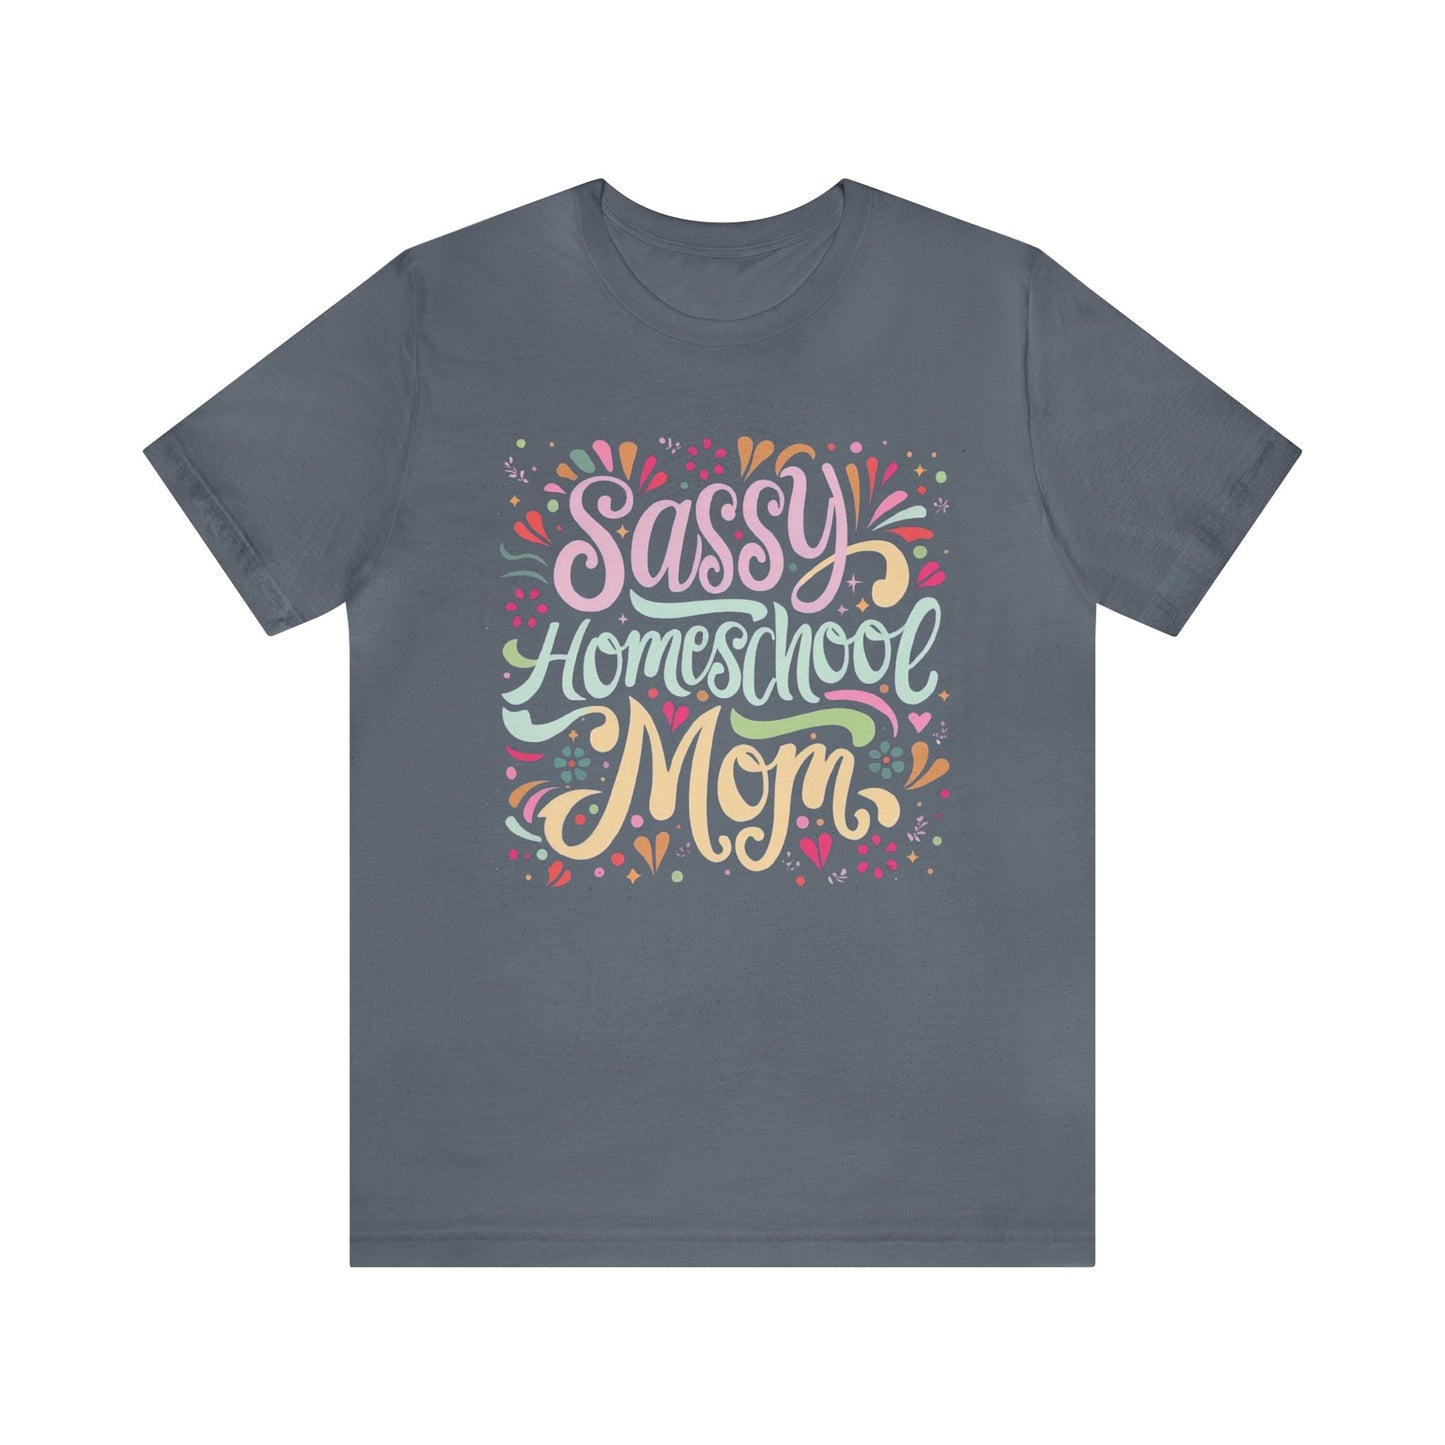 Homeschool Mom T-shirt - "Sassy Homeschool Mom"